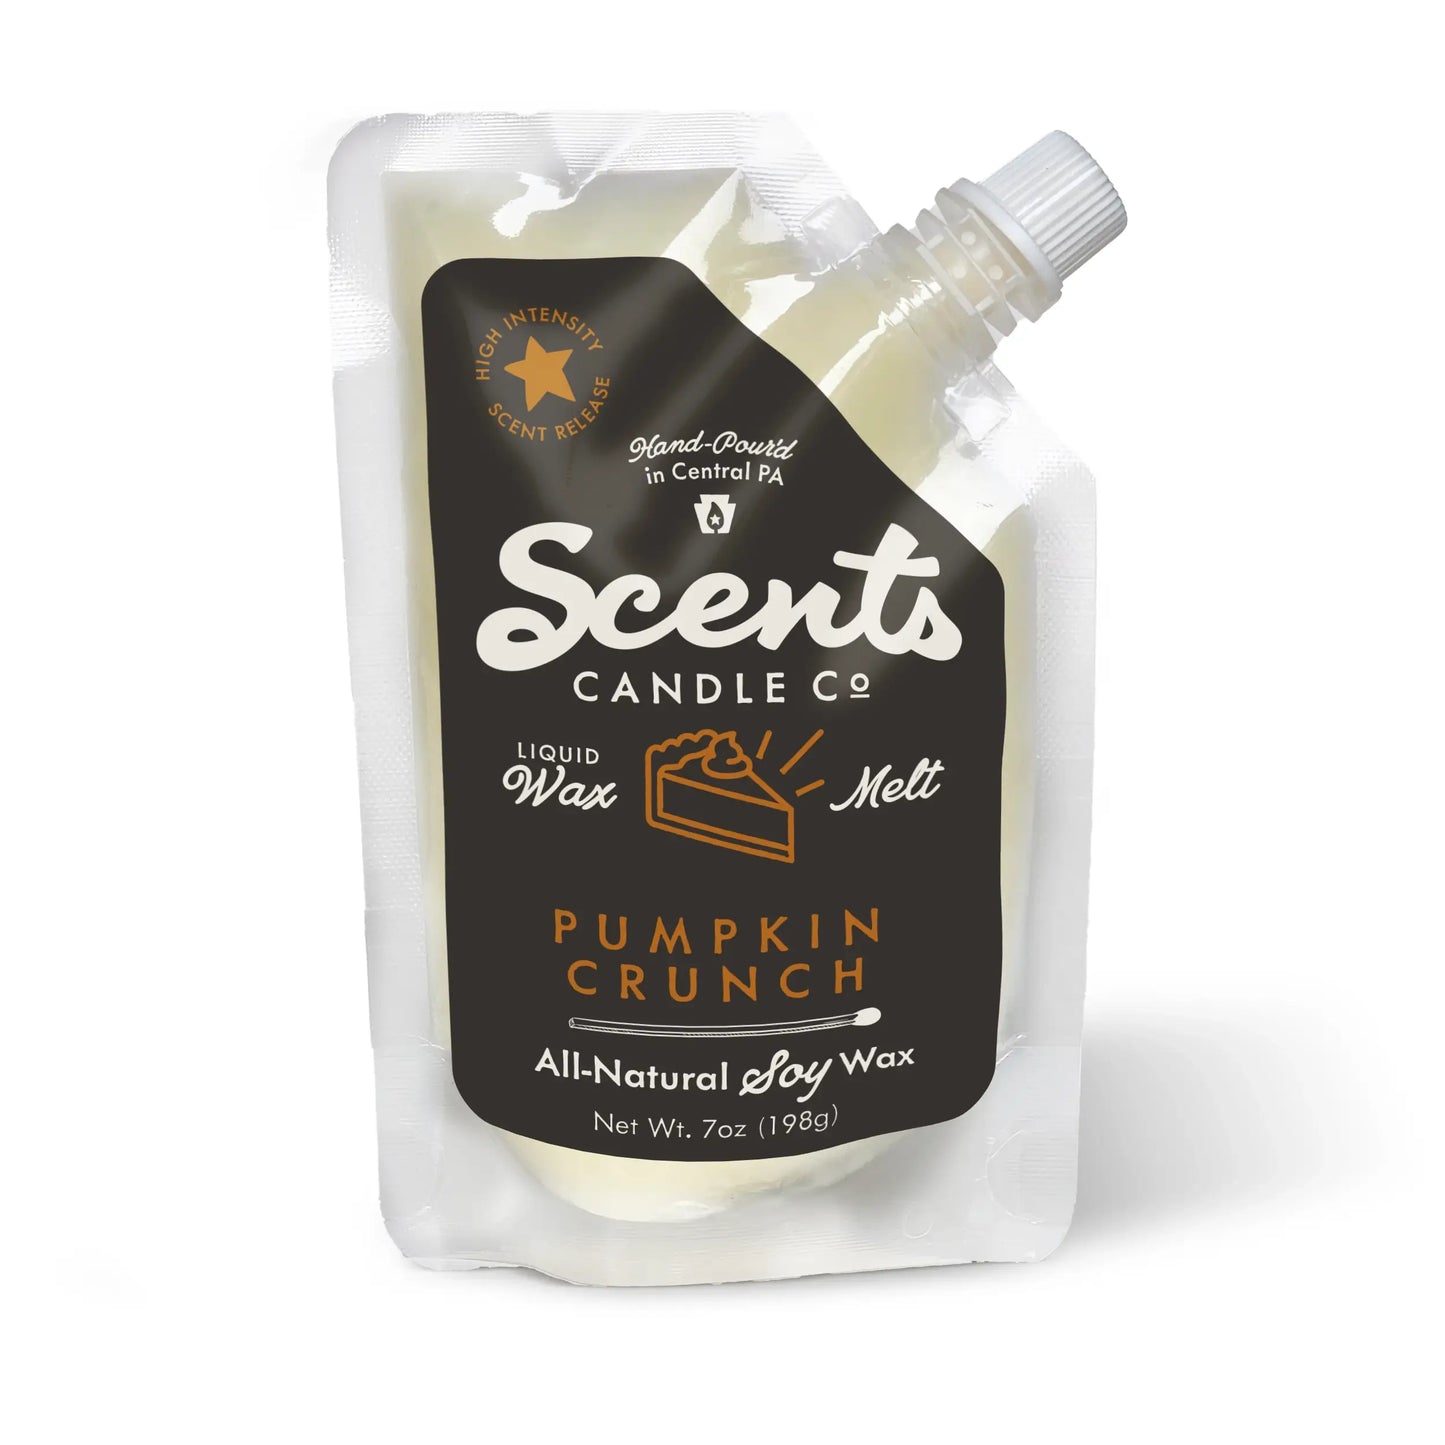 Scents Candle Co. Pumpkin Crunch Liquid Wax Melt